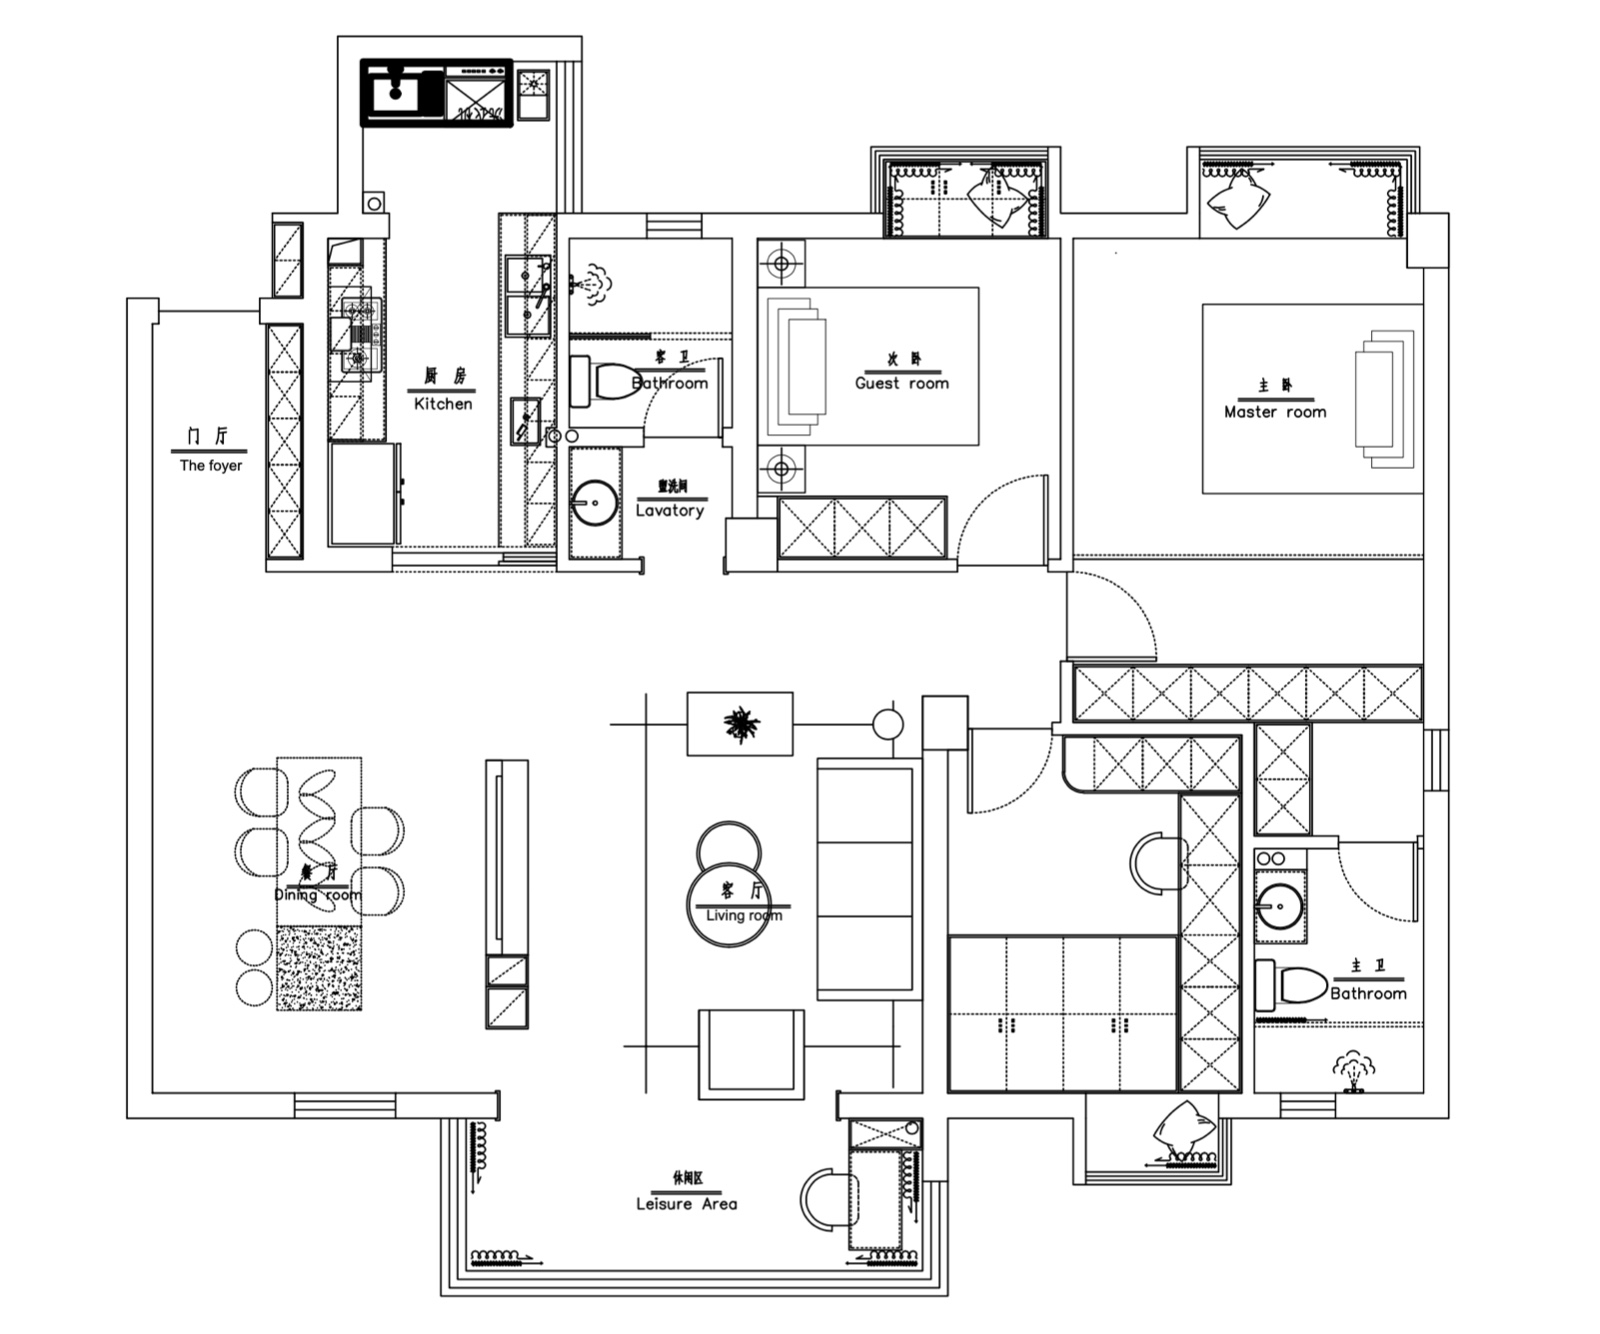 122混搭三房装修效果图,温馨家园-混搭极简装修案例效果图-美广网